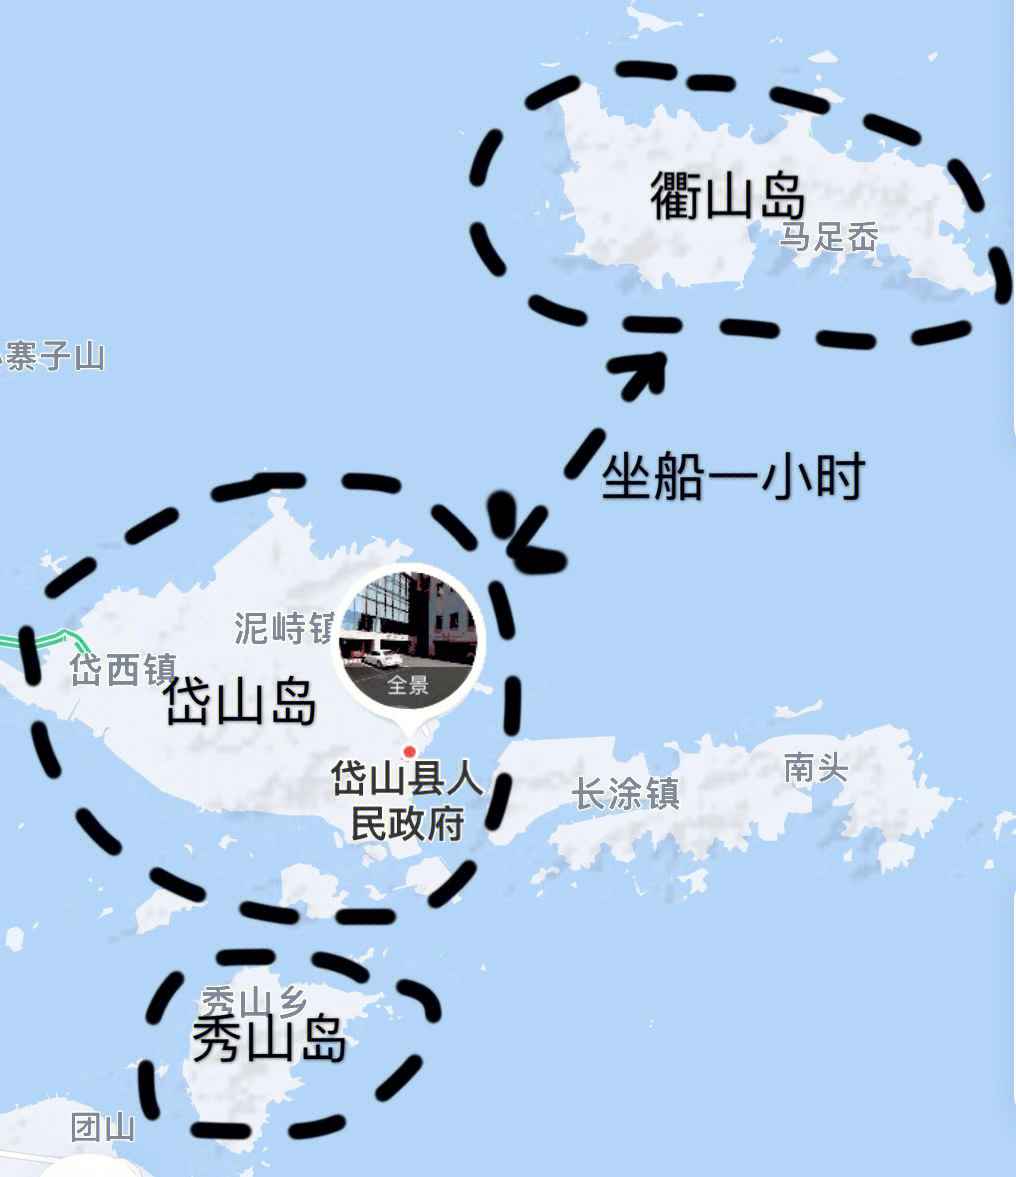 岱山岛旅游地图图片